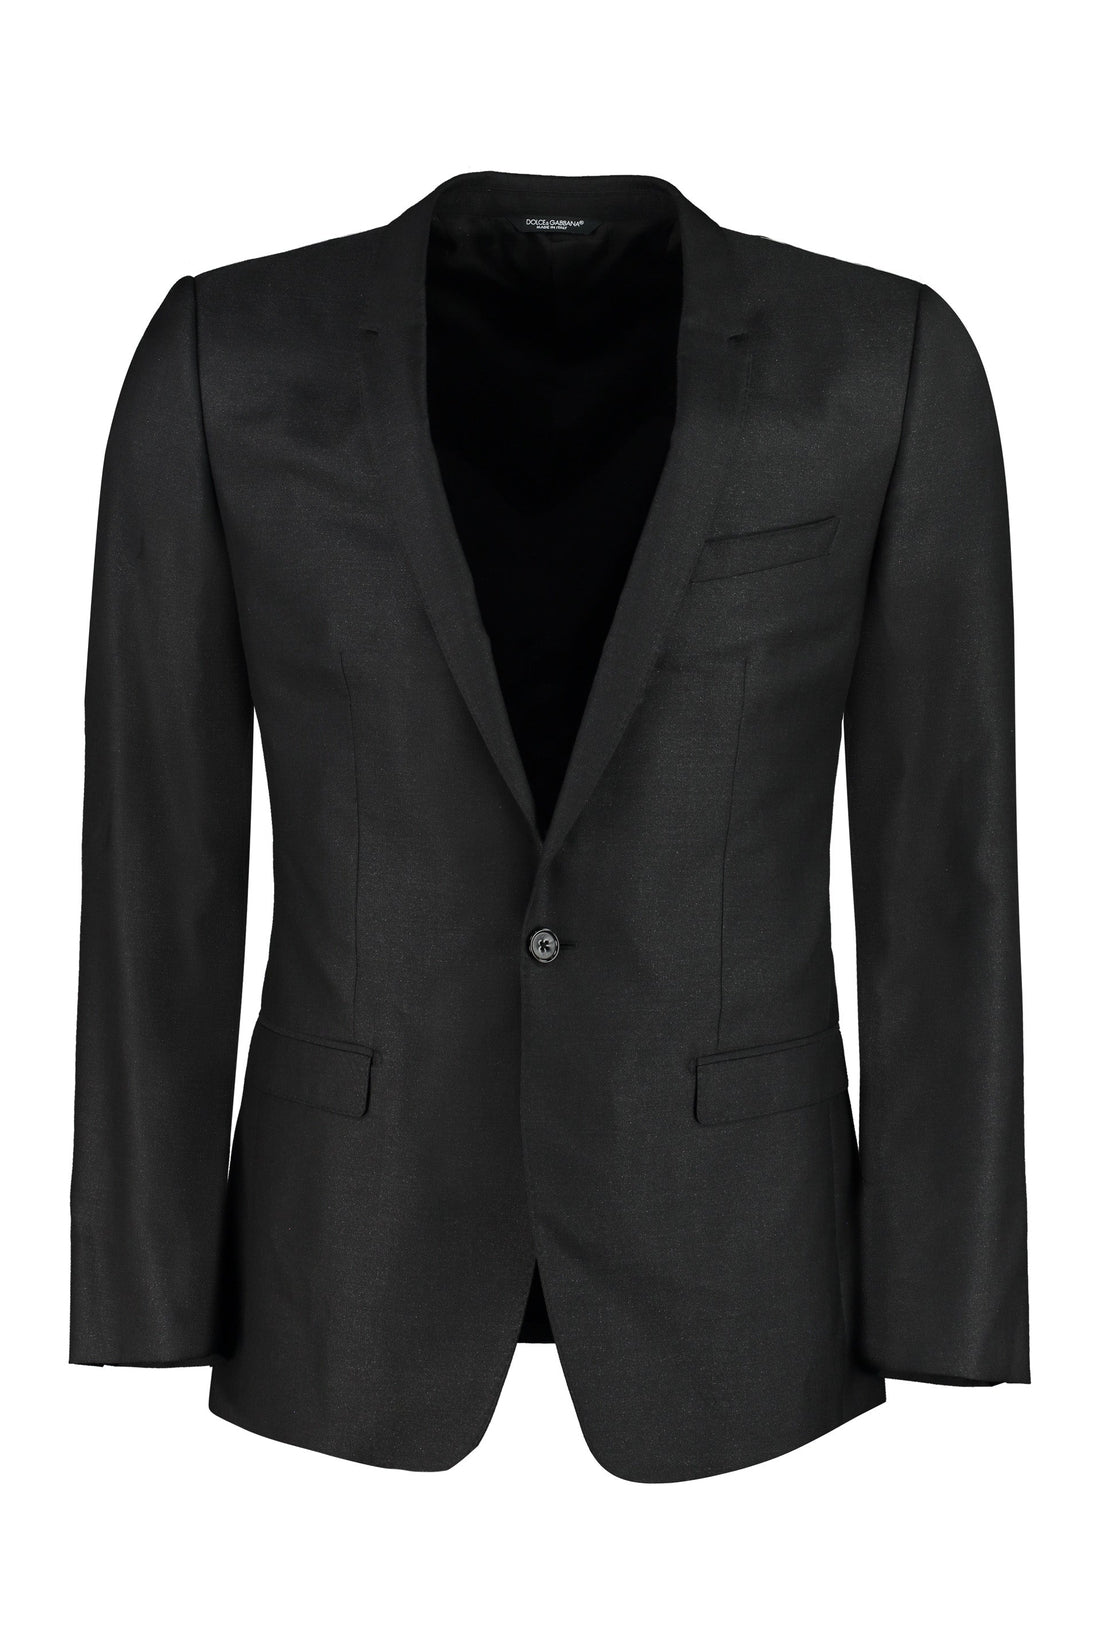 Dolce & Gabbana-OUTLET-SALE-Wool blend two-piece suit-ARCHIVIST